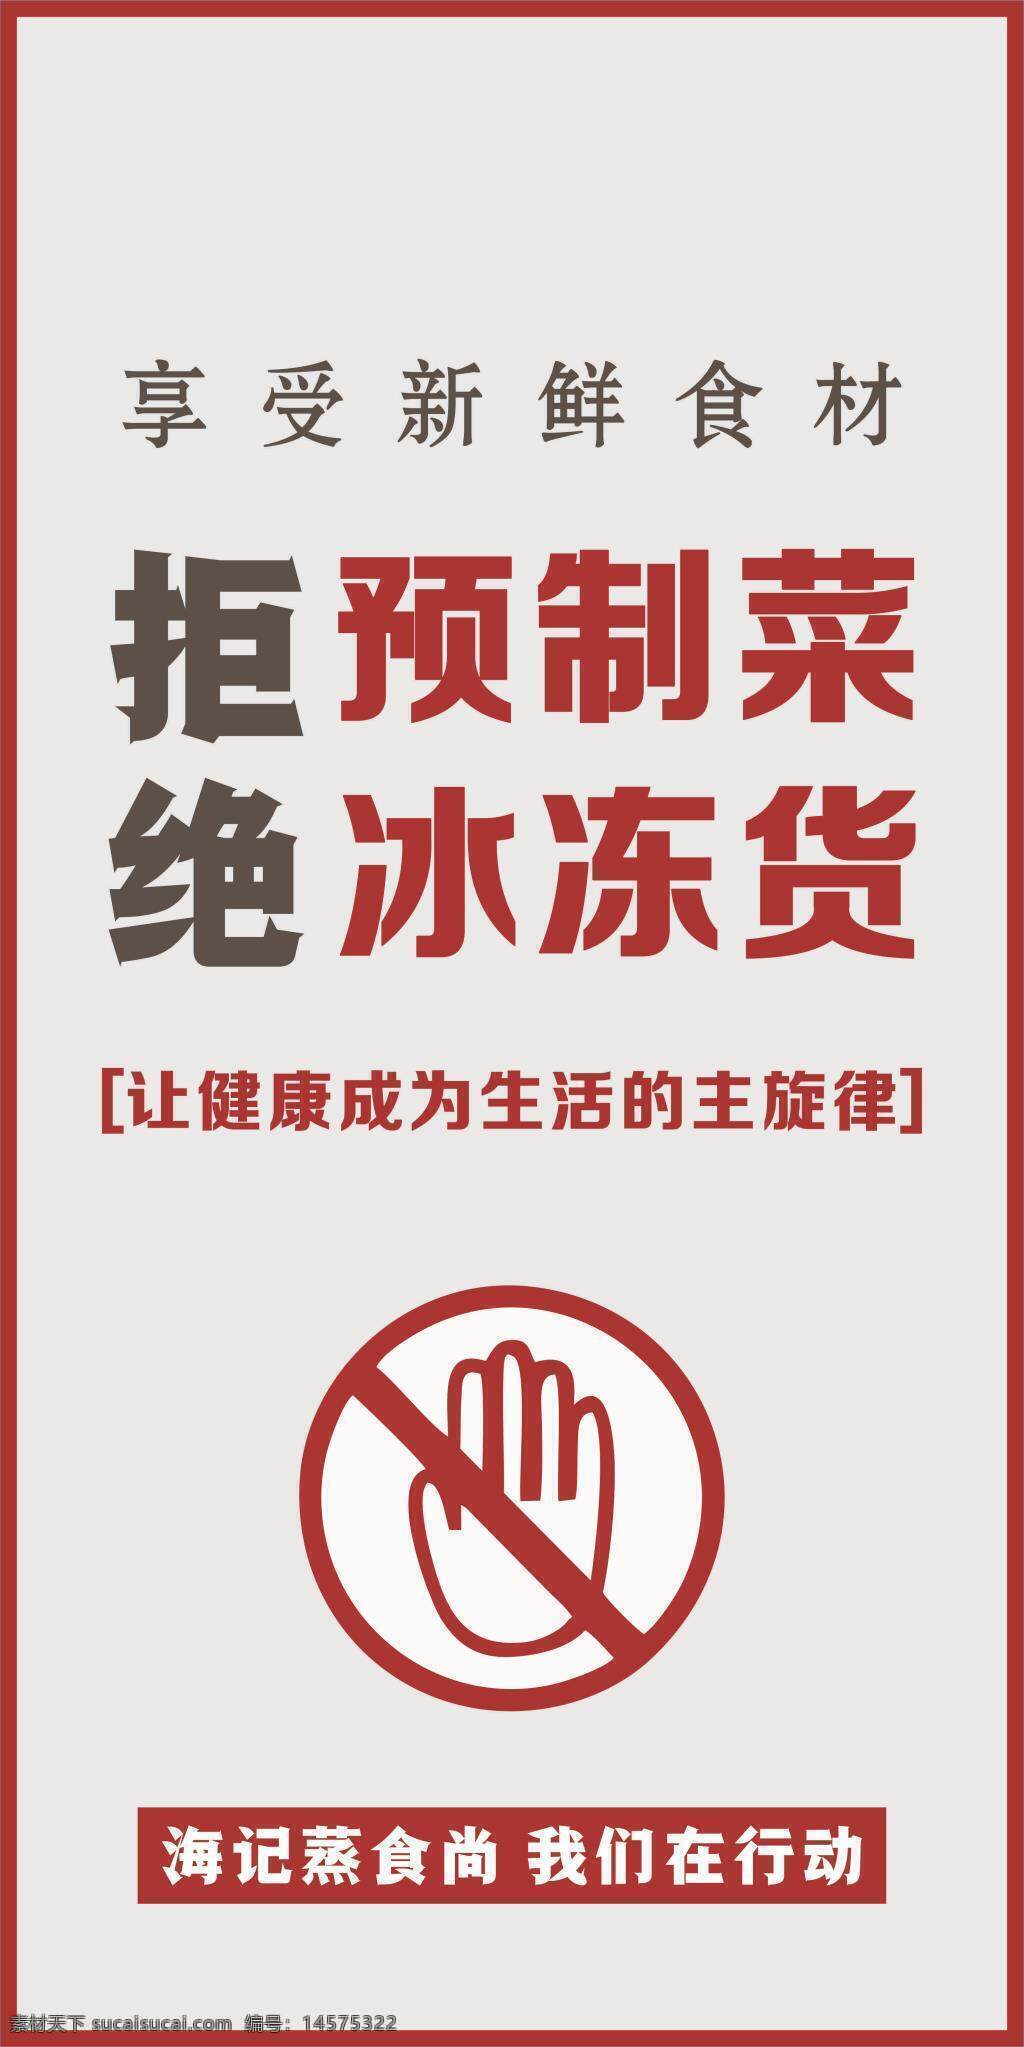 拒绝预制菜 拒绝冰冻菜 禁止标志 海报设计 预制菜 设计 广告设计 cdr